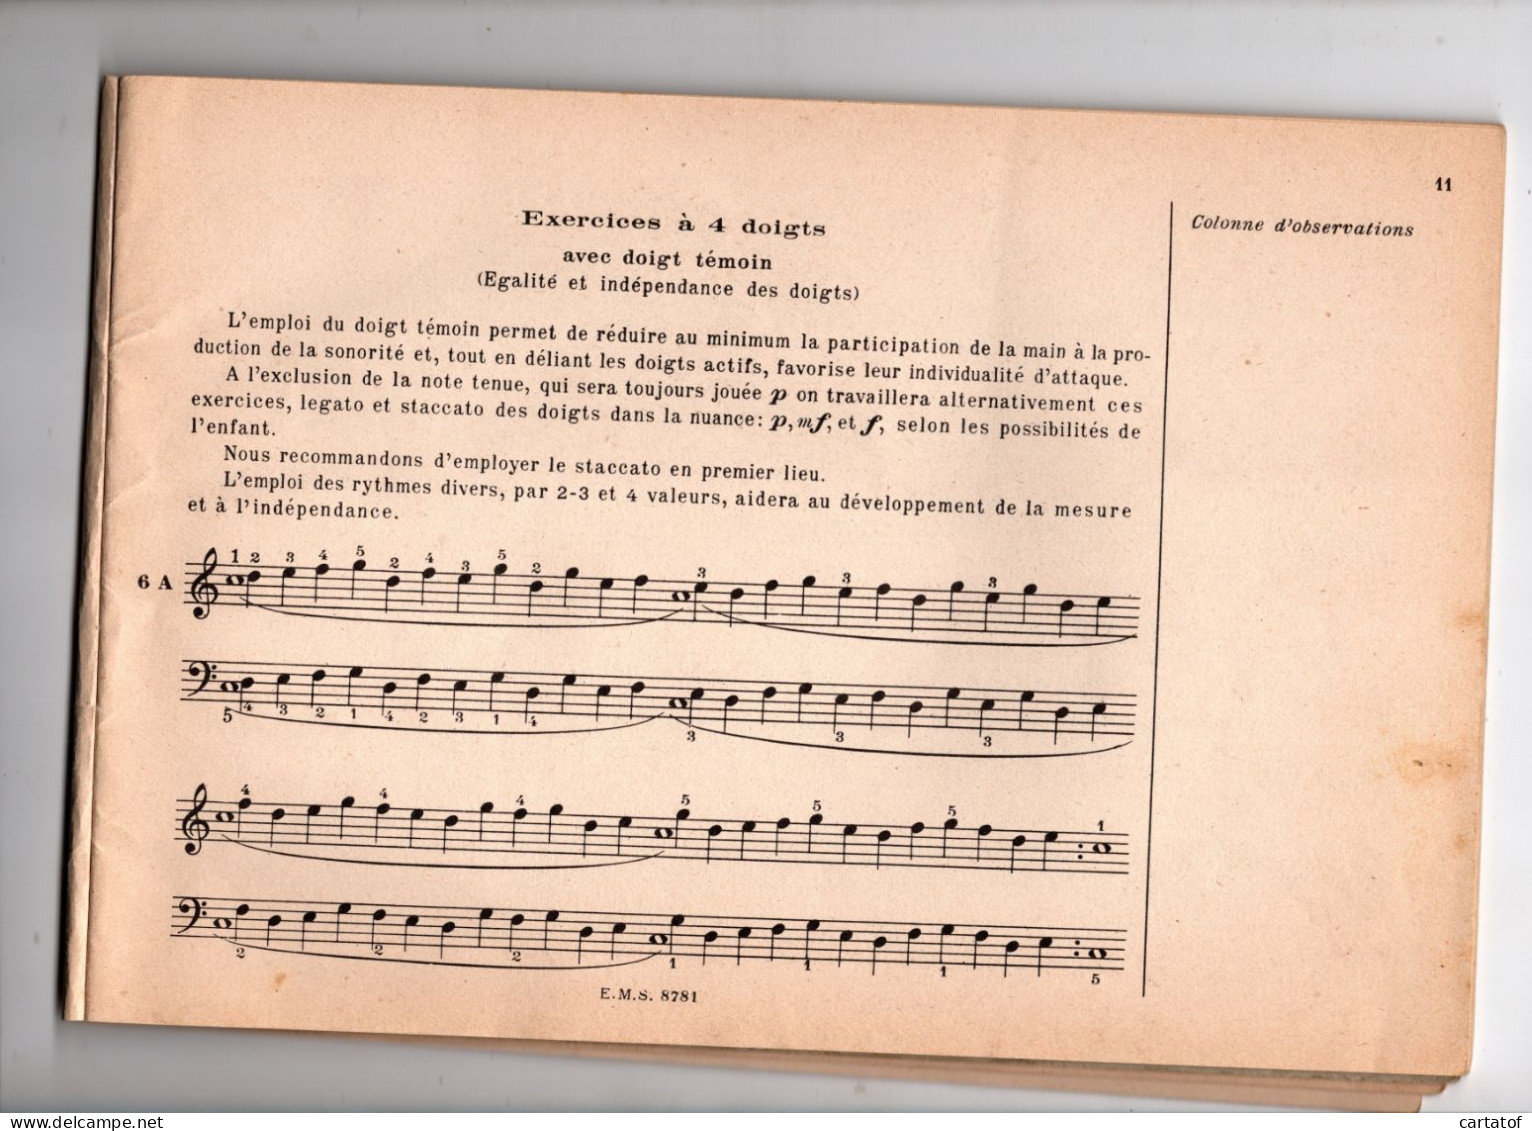 Principes Elémentaires De La Technique Pianistique . ALFRED CORTOT . JEANNE BLANCARD . Editions SALABERT - Música